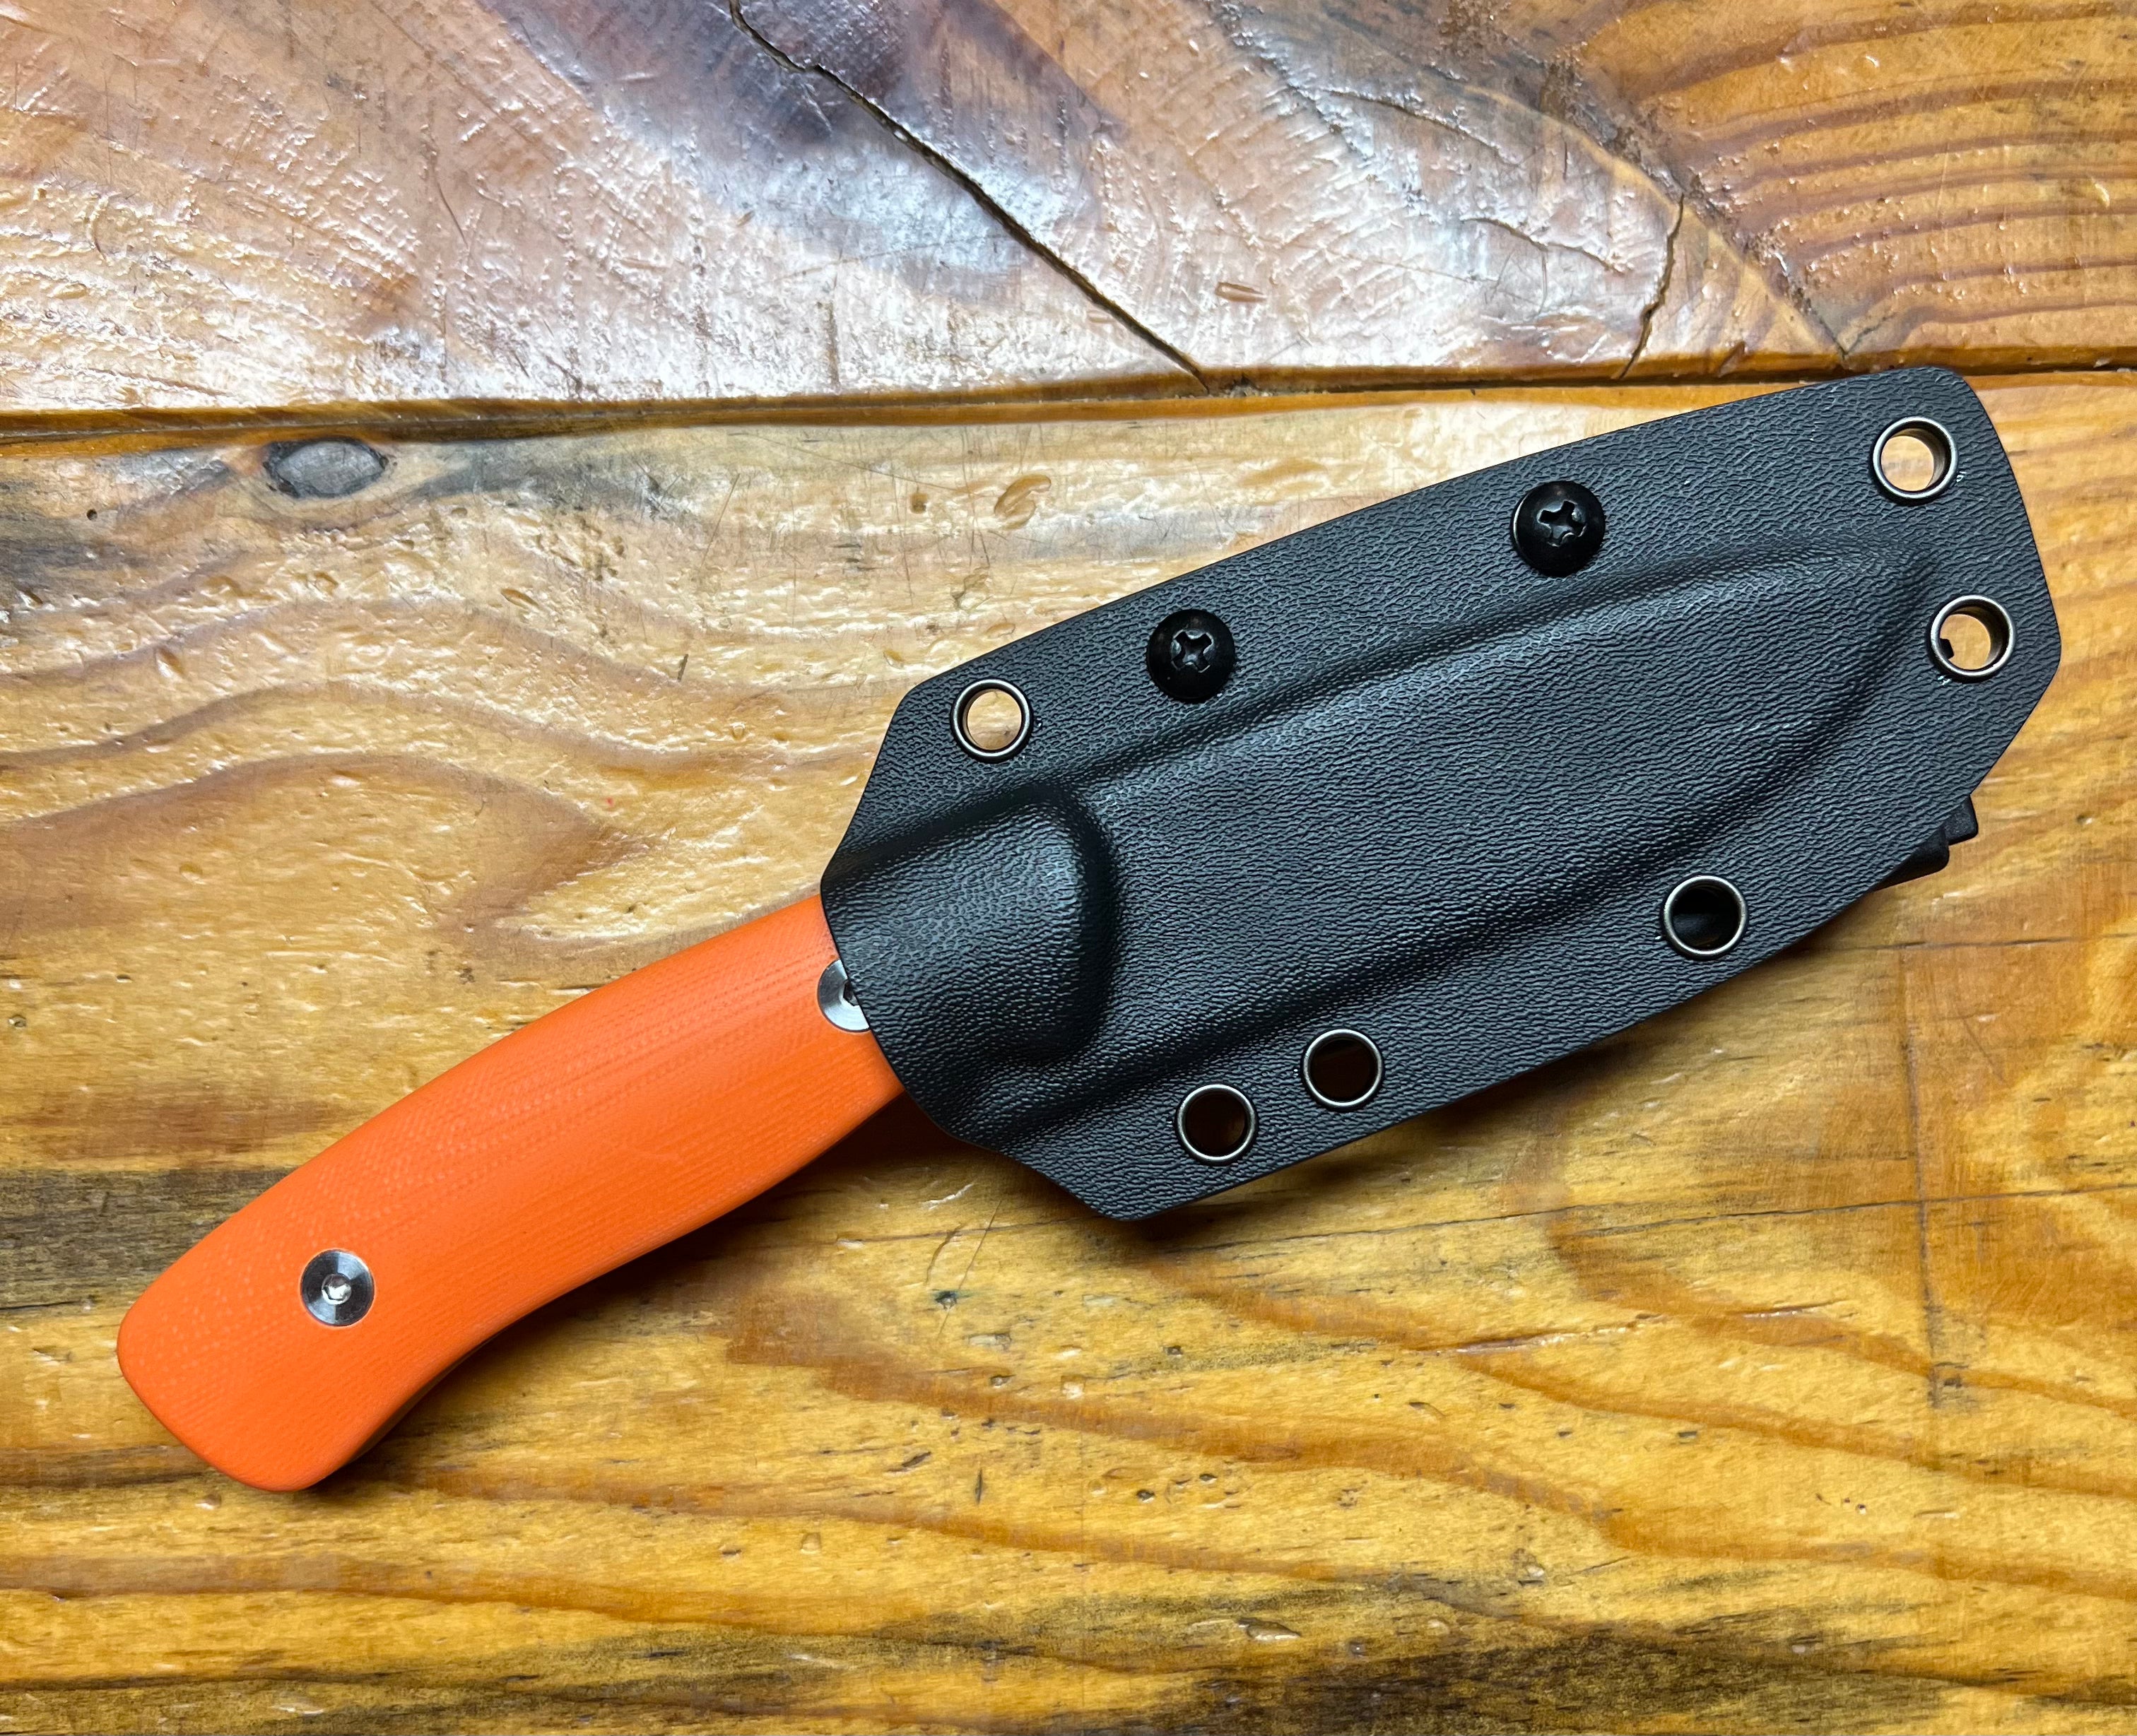 The WhiteTail Skinner Orange “Williams Knife”